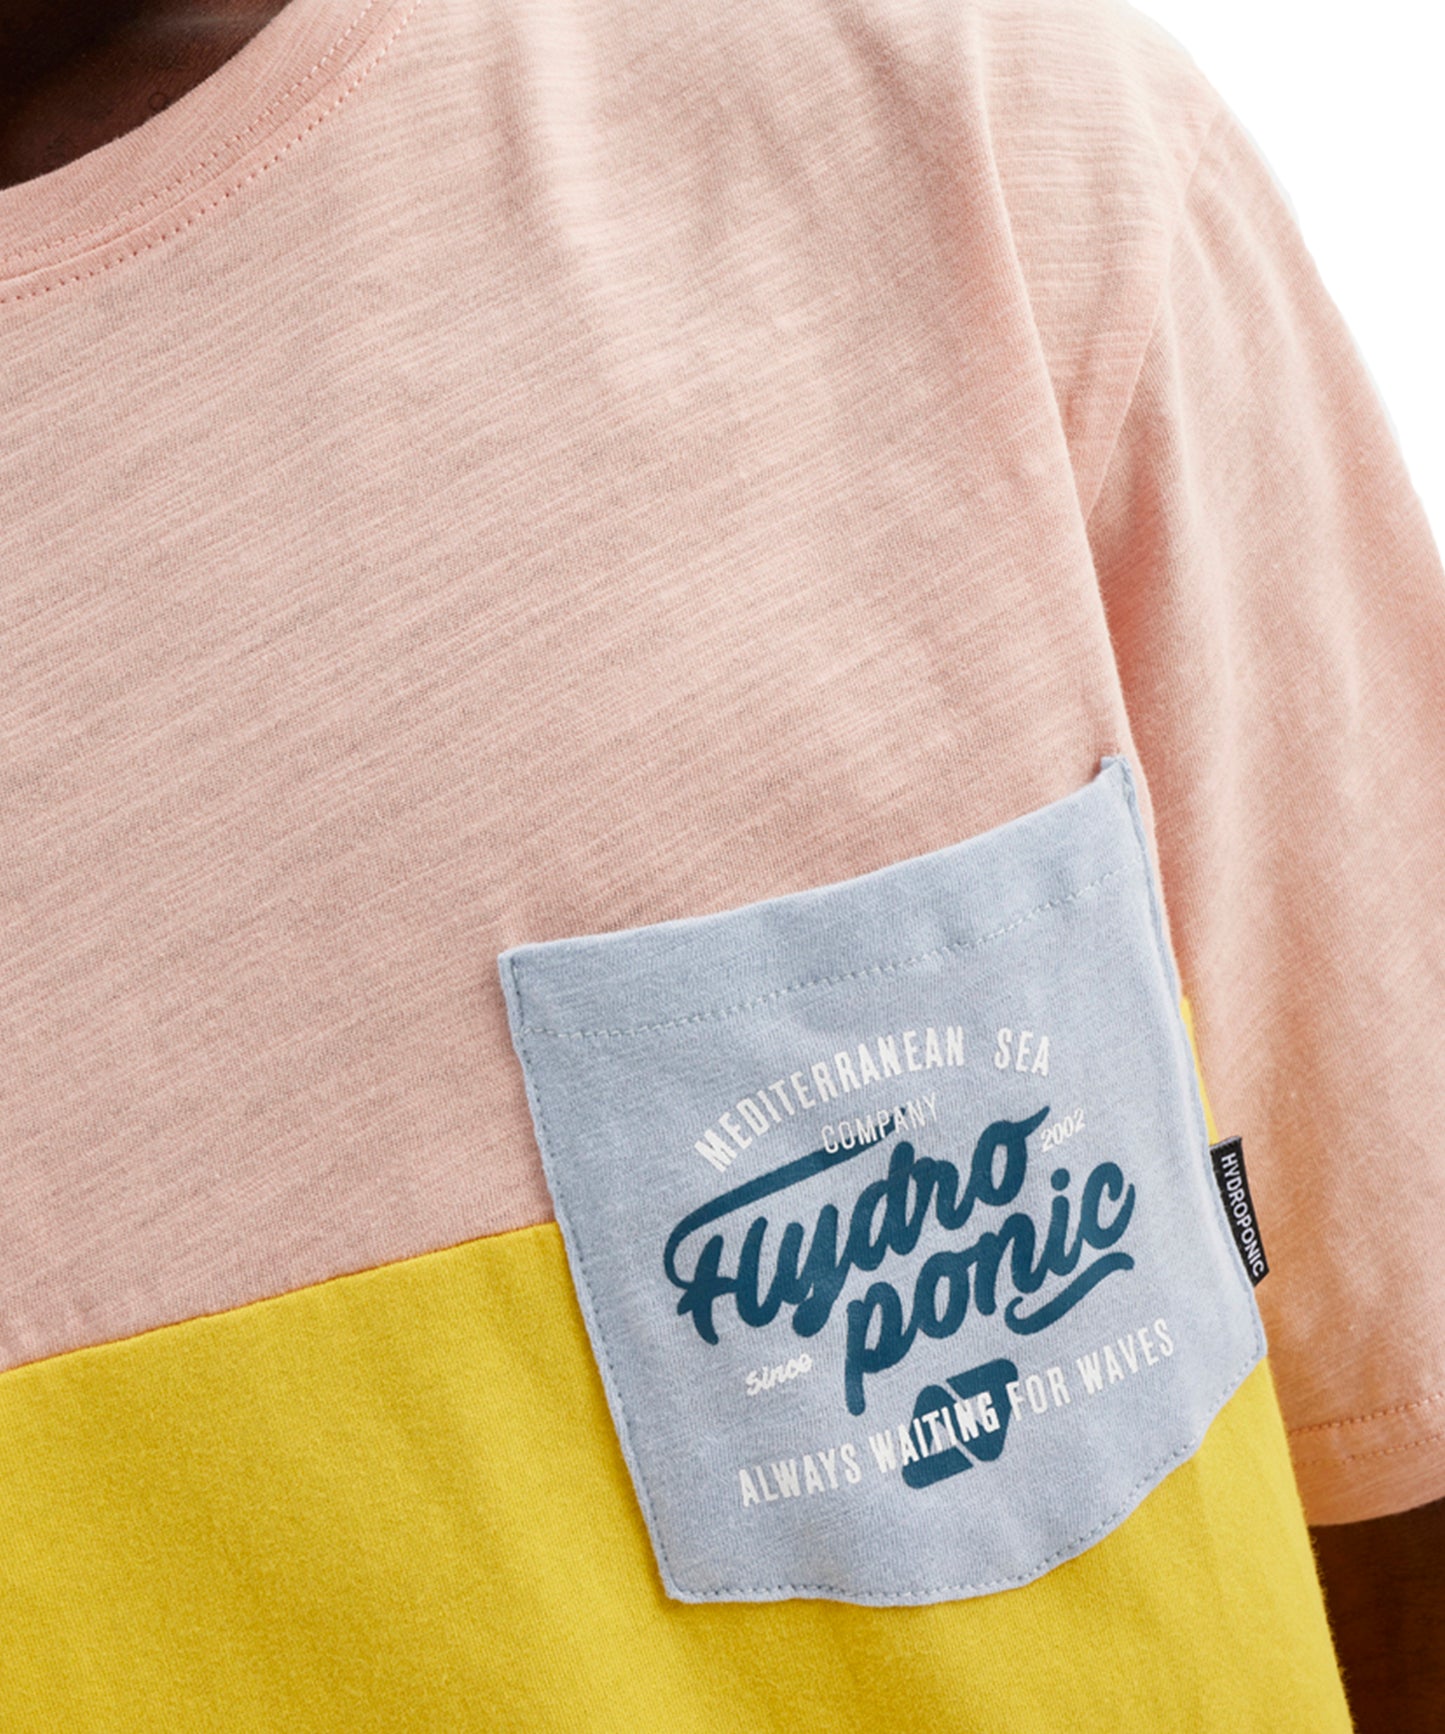 camiseta-hydroponic-camiseta-always-paneles-de-colores-amarillo-y-rosa-bolsillo-en-el-pecho-serigrafíado-